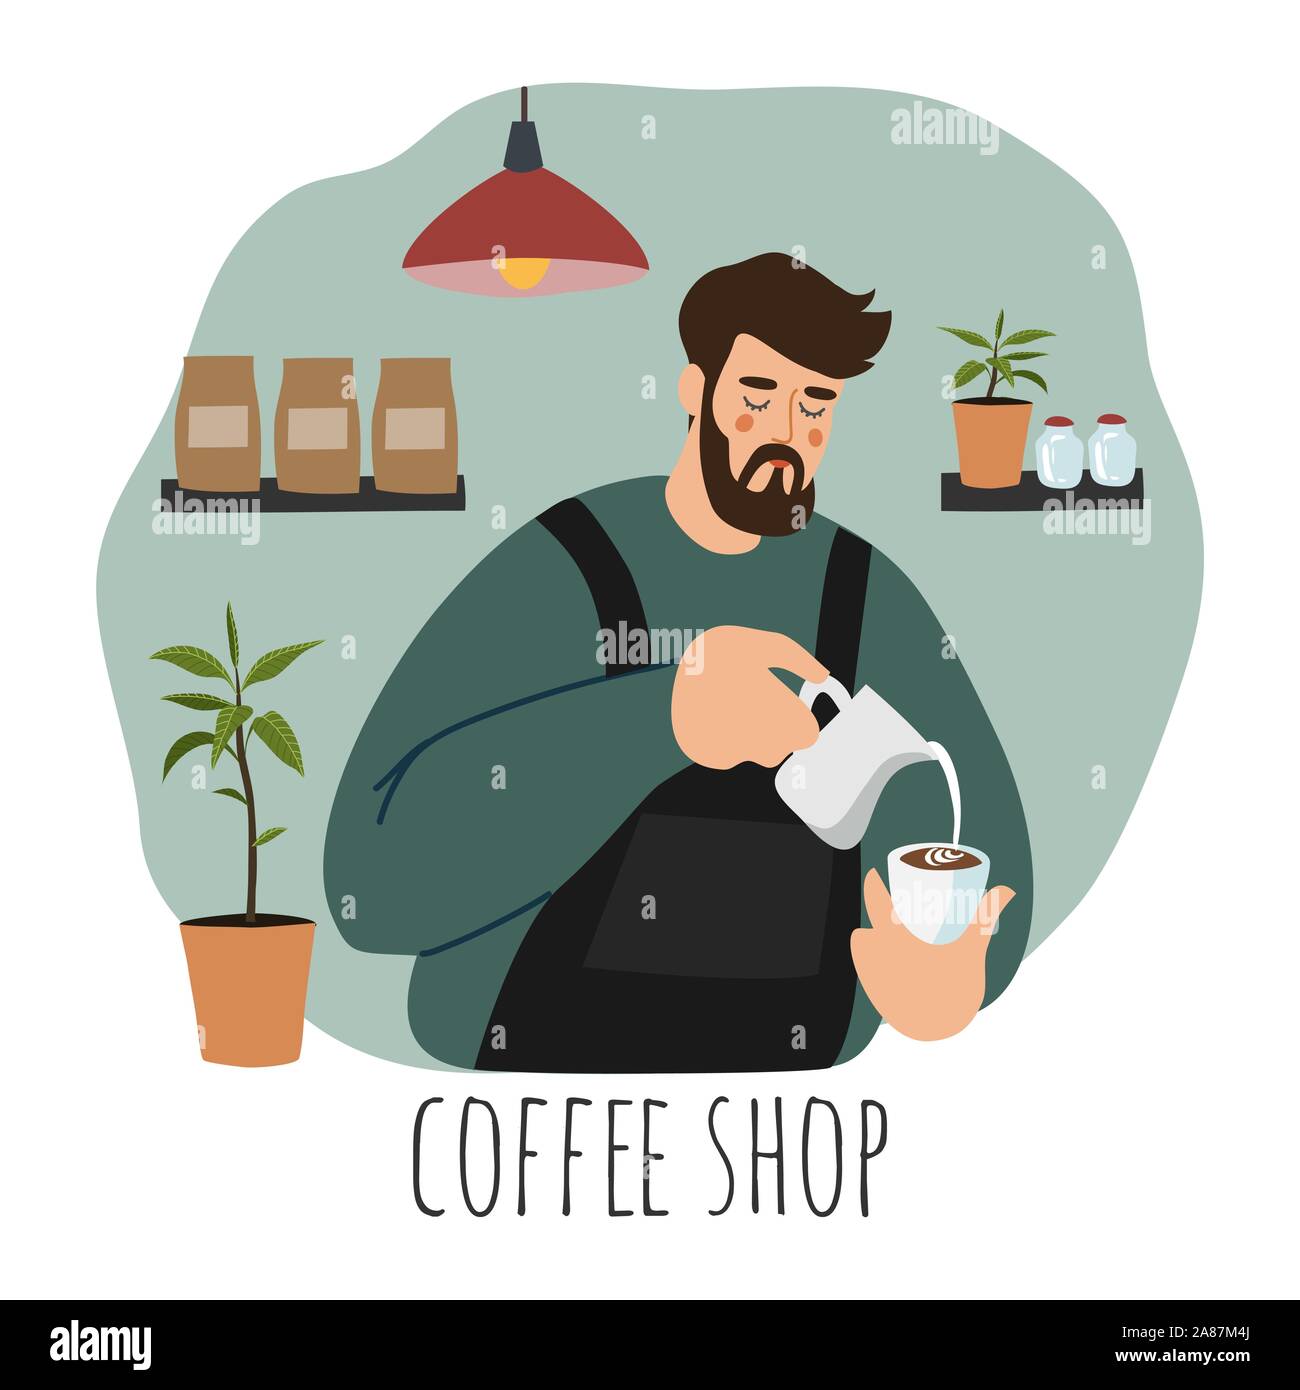 Coffee Shop, Barista. Flache vector Abbildung: Ein junger Mann mit Schürze gießen Schlagsahne Milch in die Kaffeetasse. Hand Comicfigur gezeichnet Stock Vektor